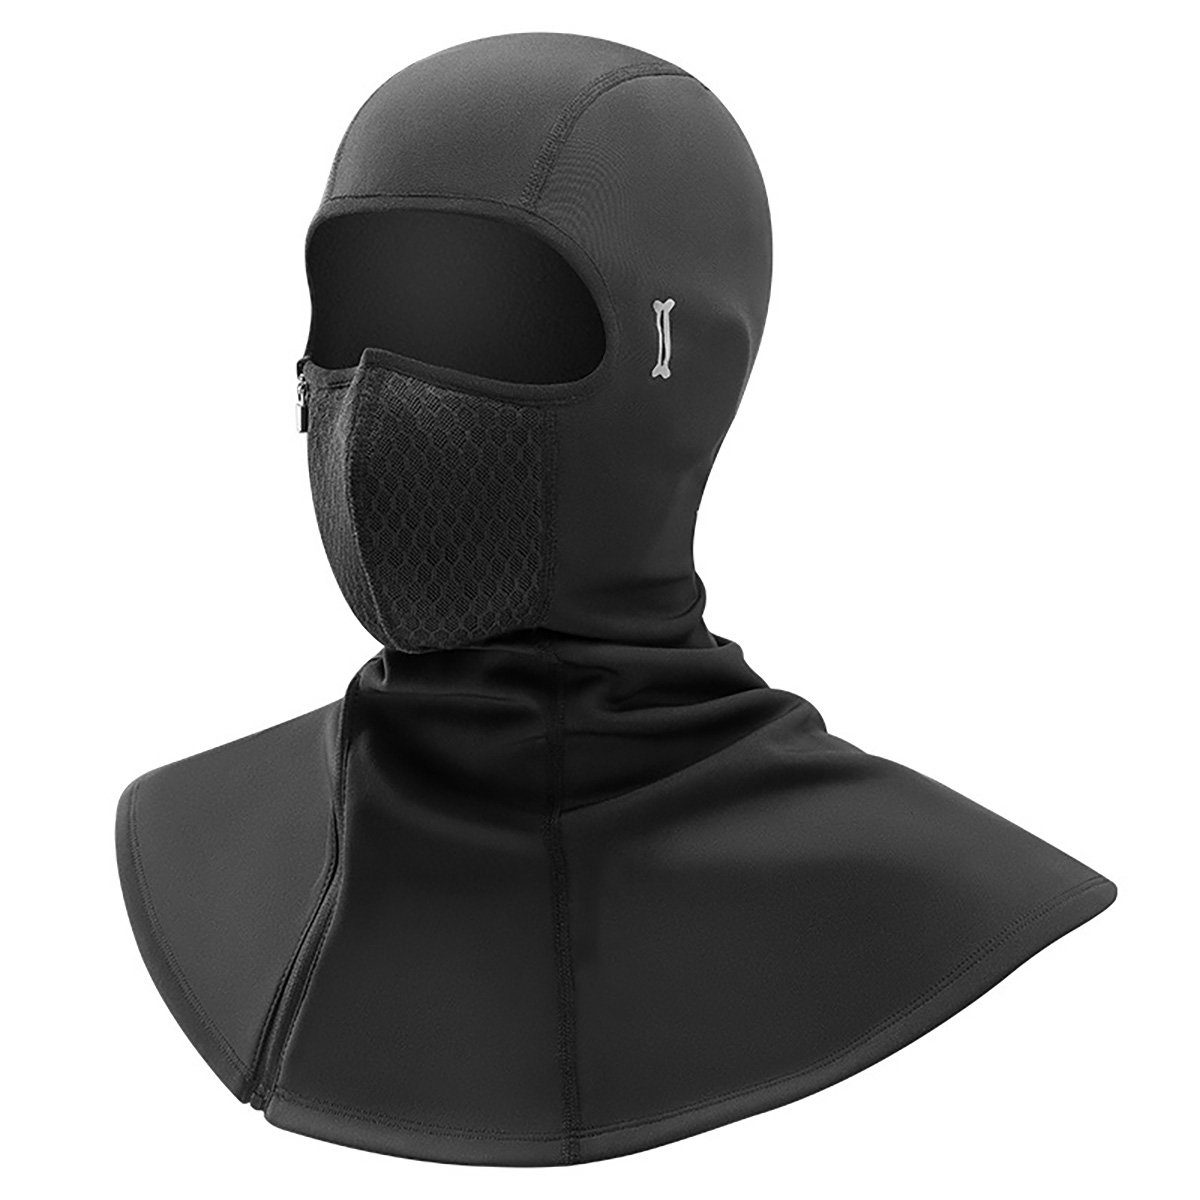 yozhiqu Sturmhaube Skimaske mit Reißverschluss, zum Skifahren geeignet, schwarz Wasserdichte Vollgesichts-Winter-Fleece-Kapuze für Herren und Damen